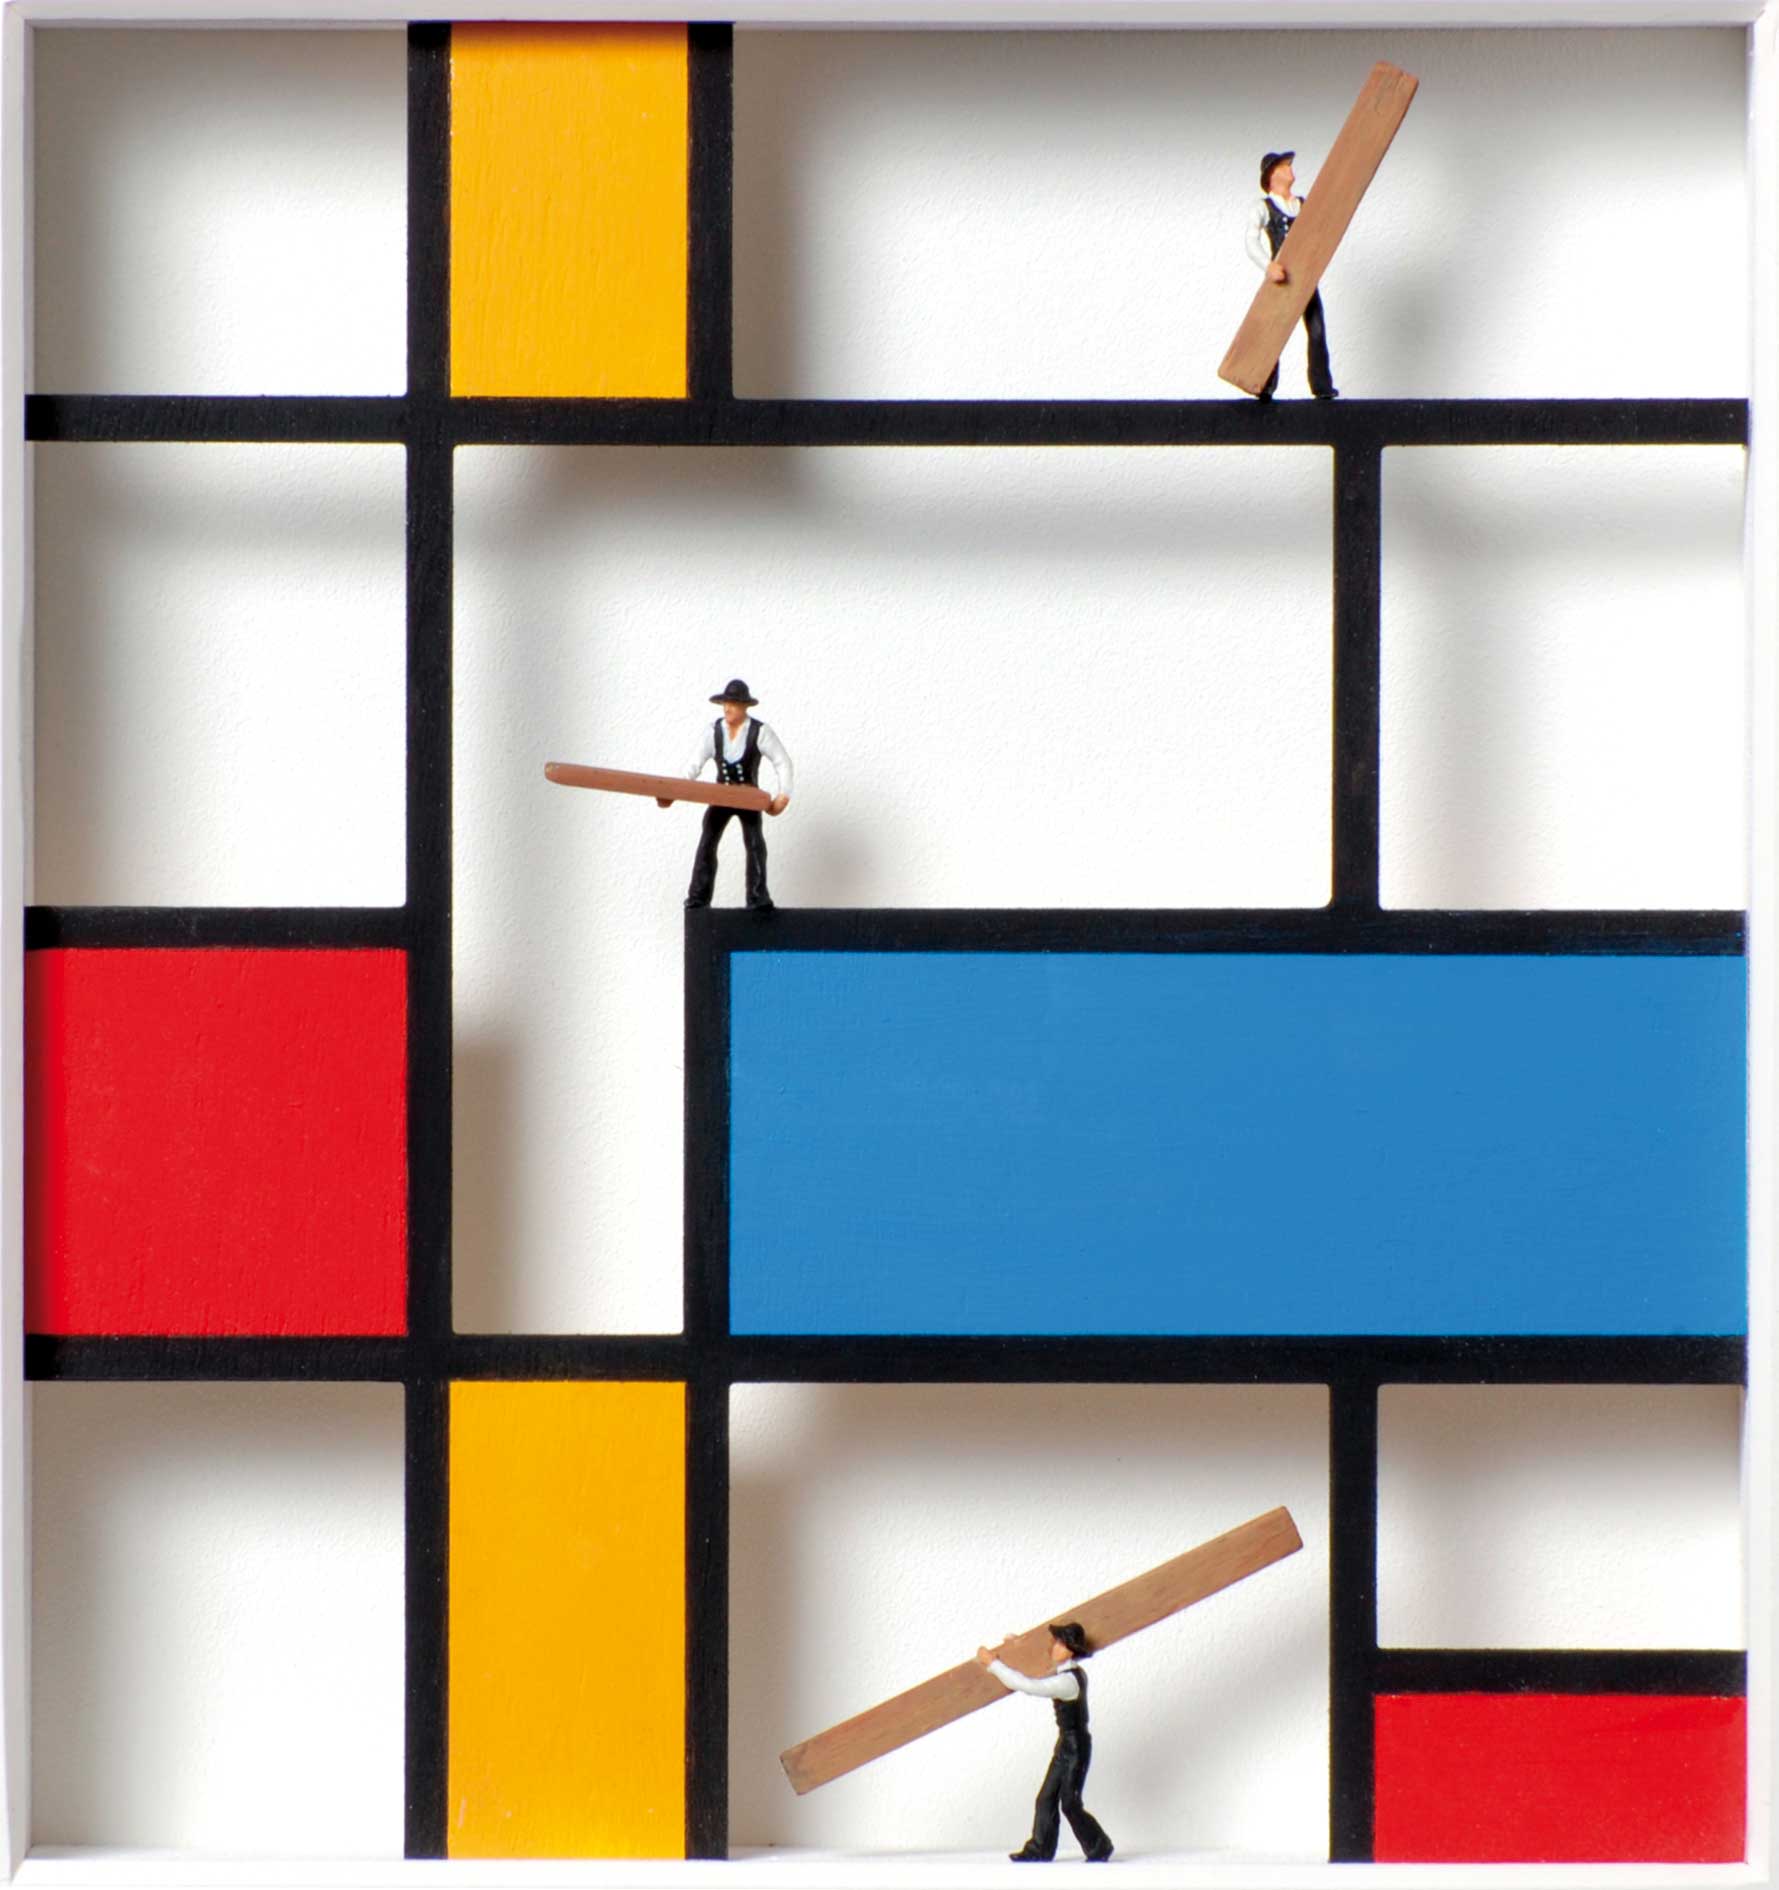 Homage to Piet Mondrian - Wir zimmern uns einen Mondrian